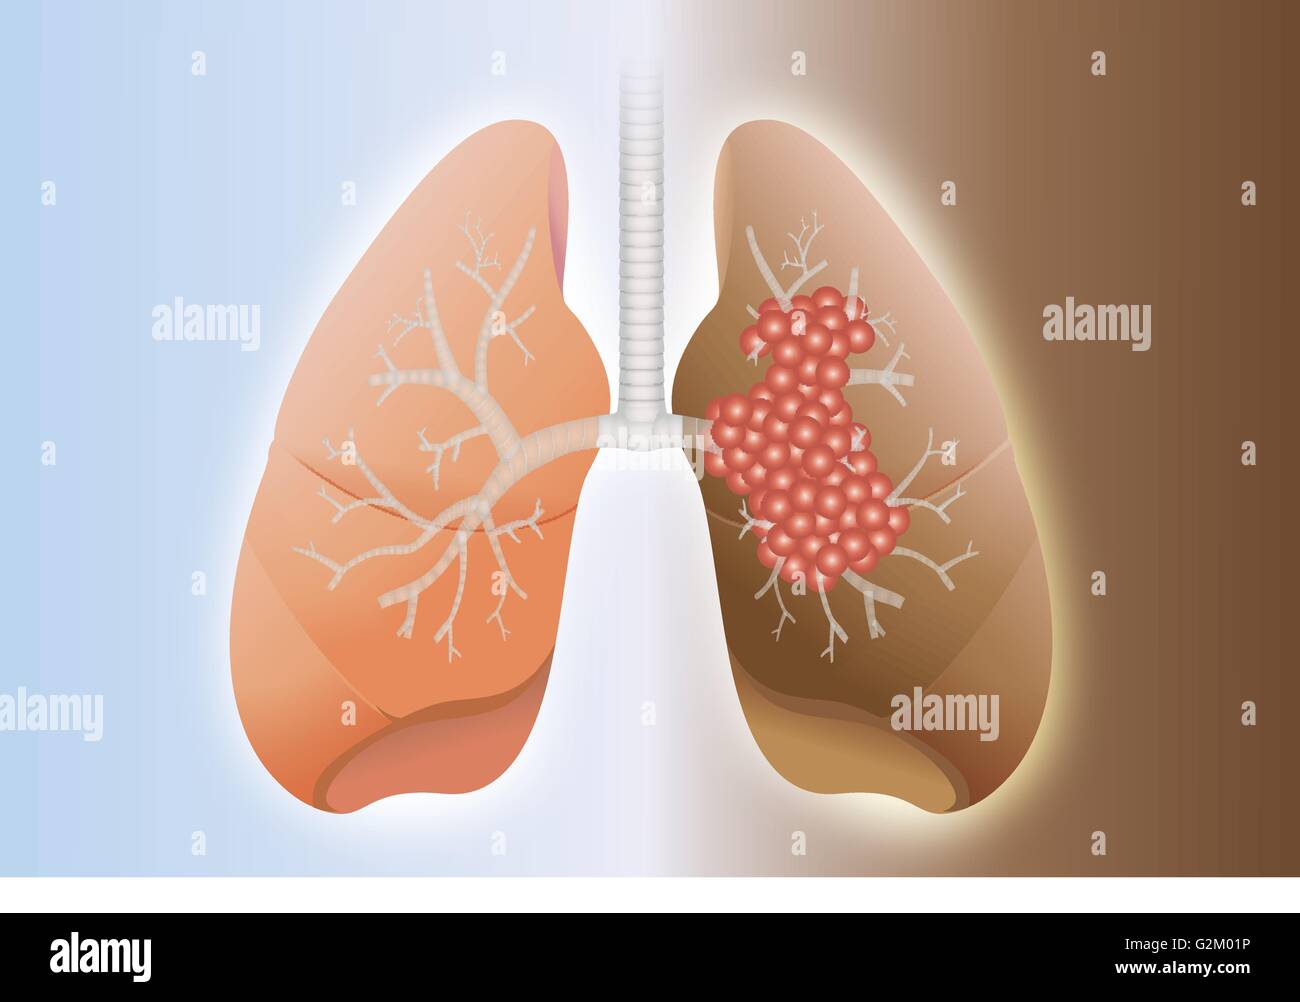 Vergleich zwischen gesunden Lunge und Krebs Lunge. Stock Vektor